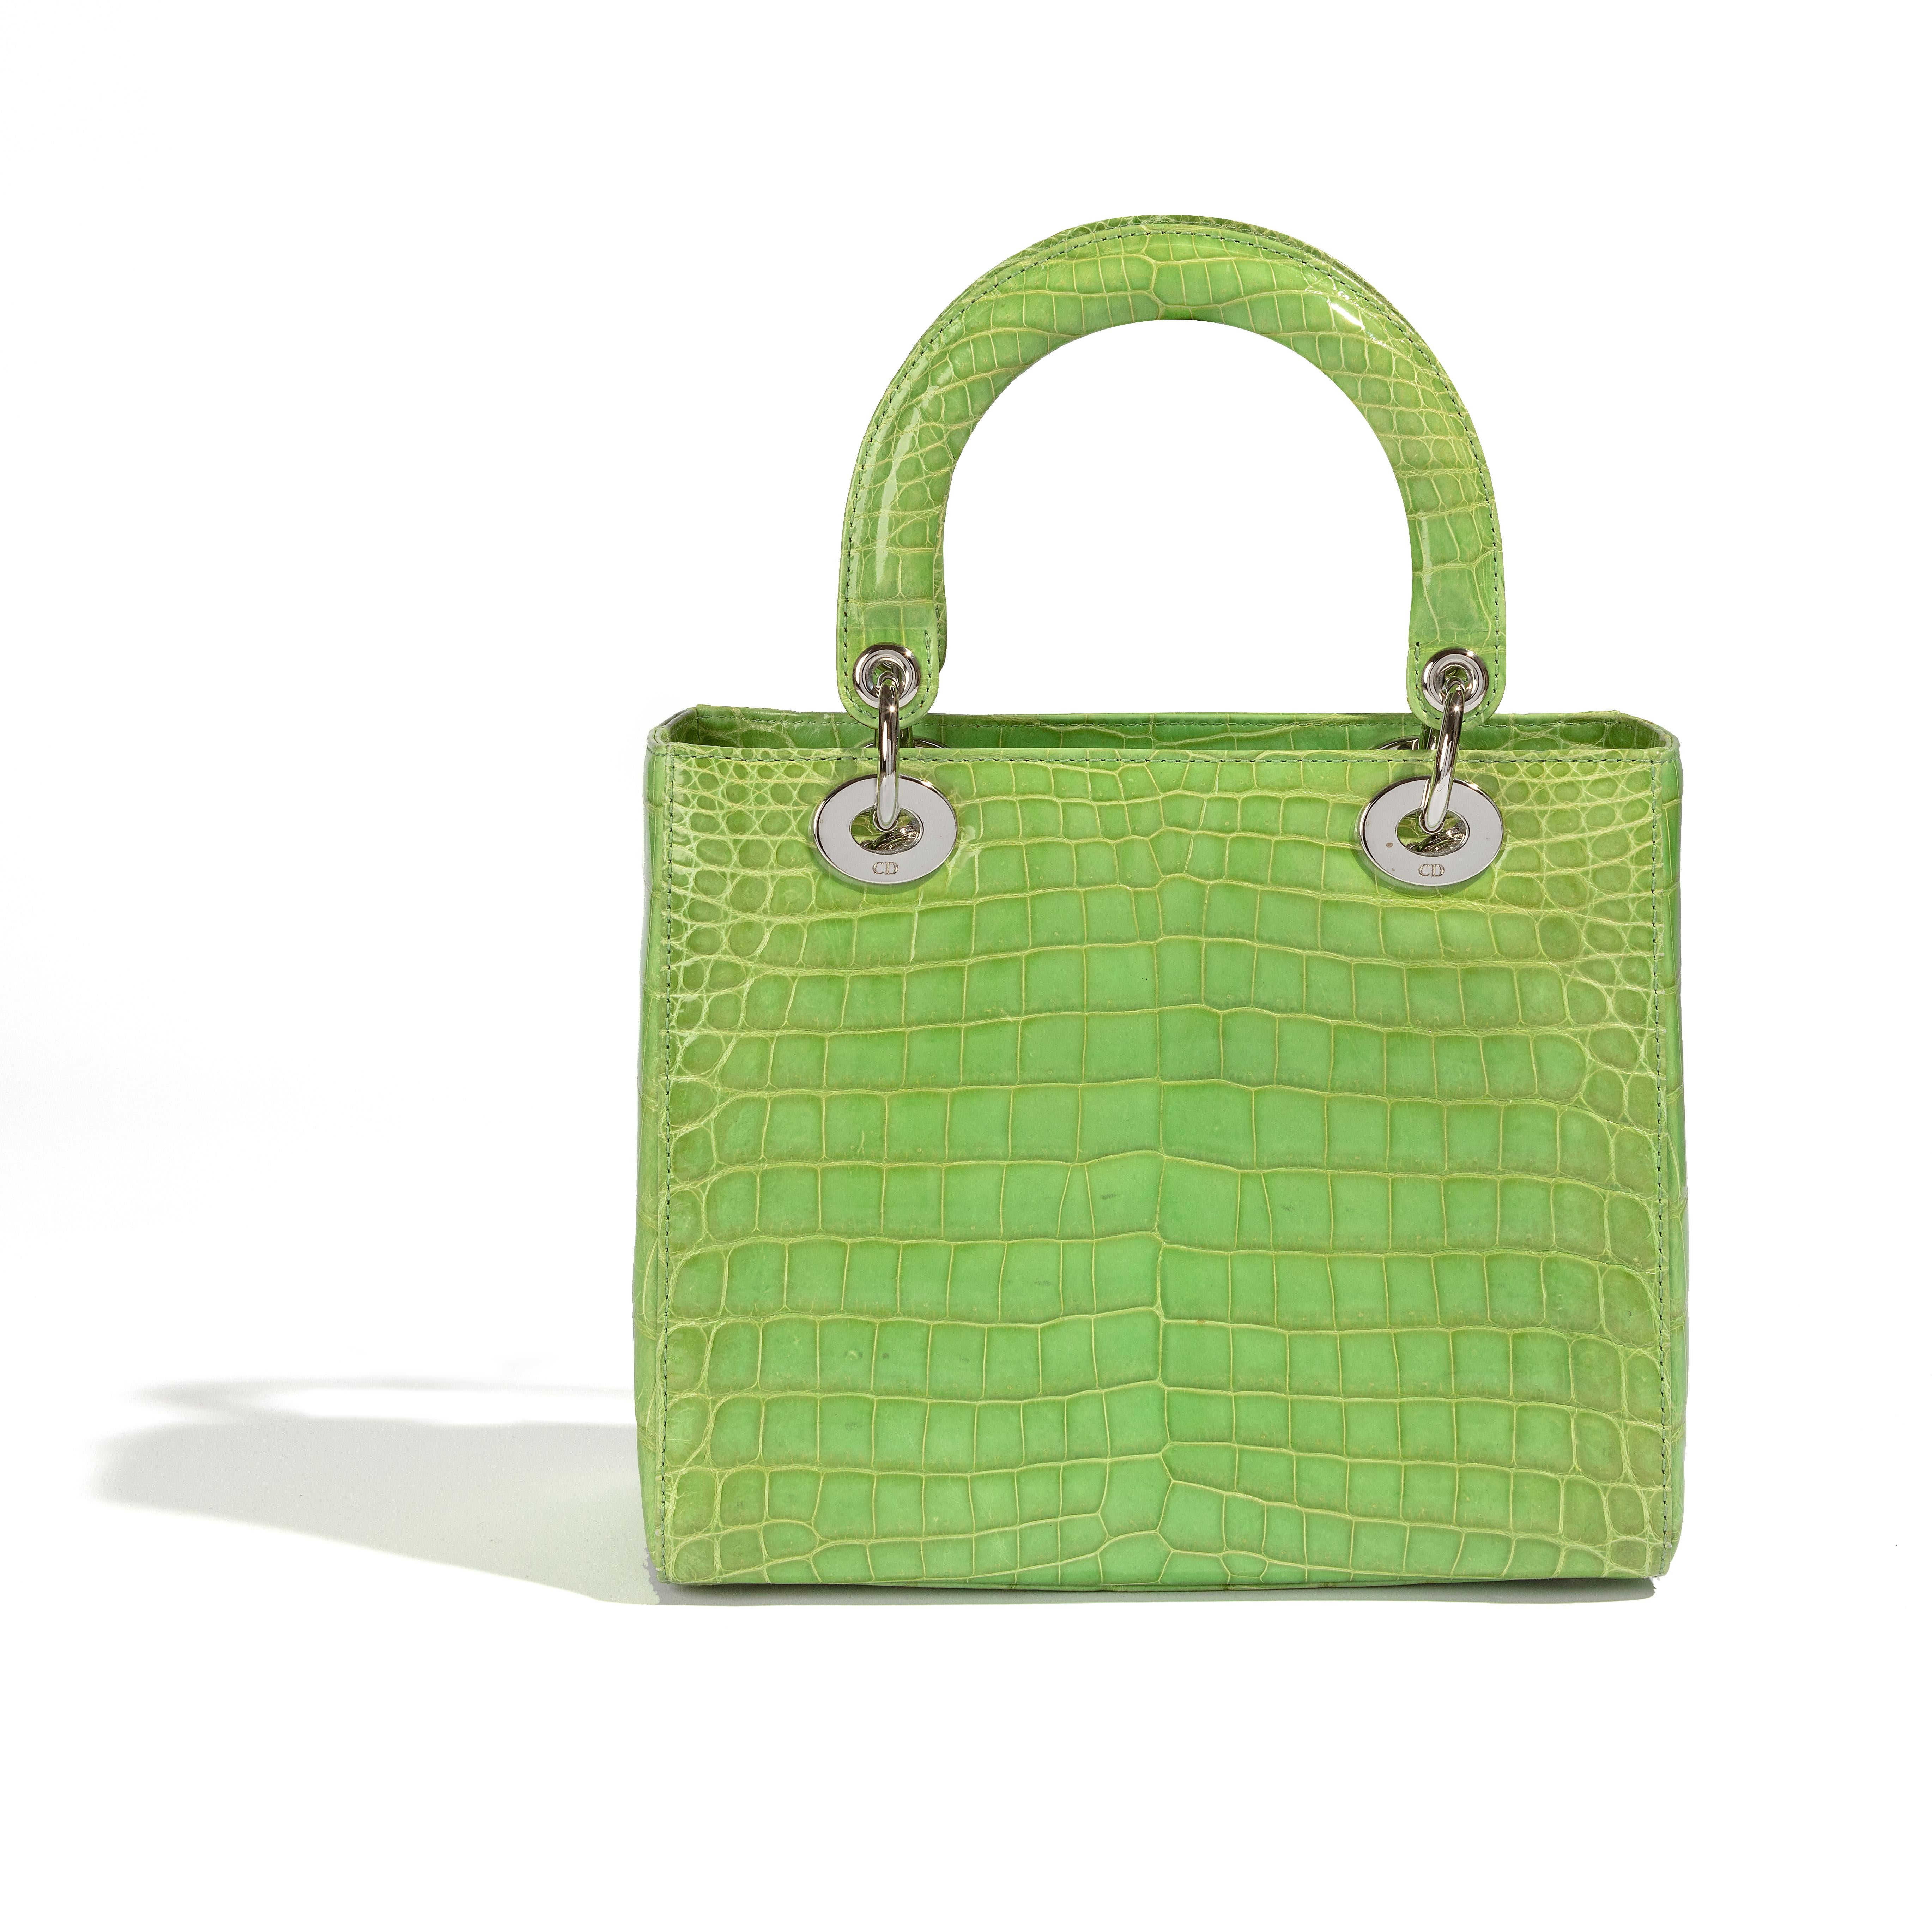 Sac à main Lady Dior en édition limitée, vert et argenté. Le sac est doté d'un compartiment unique et d'une poche intérieure zippée. Il est doté d'une poignée à double structure et est en excellent état.

Tous les articles ont été utilisés